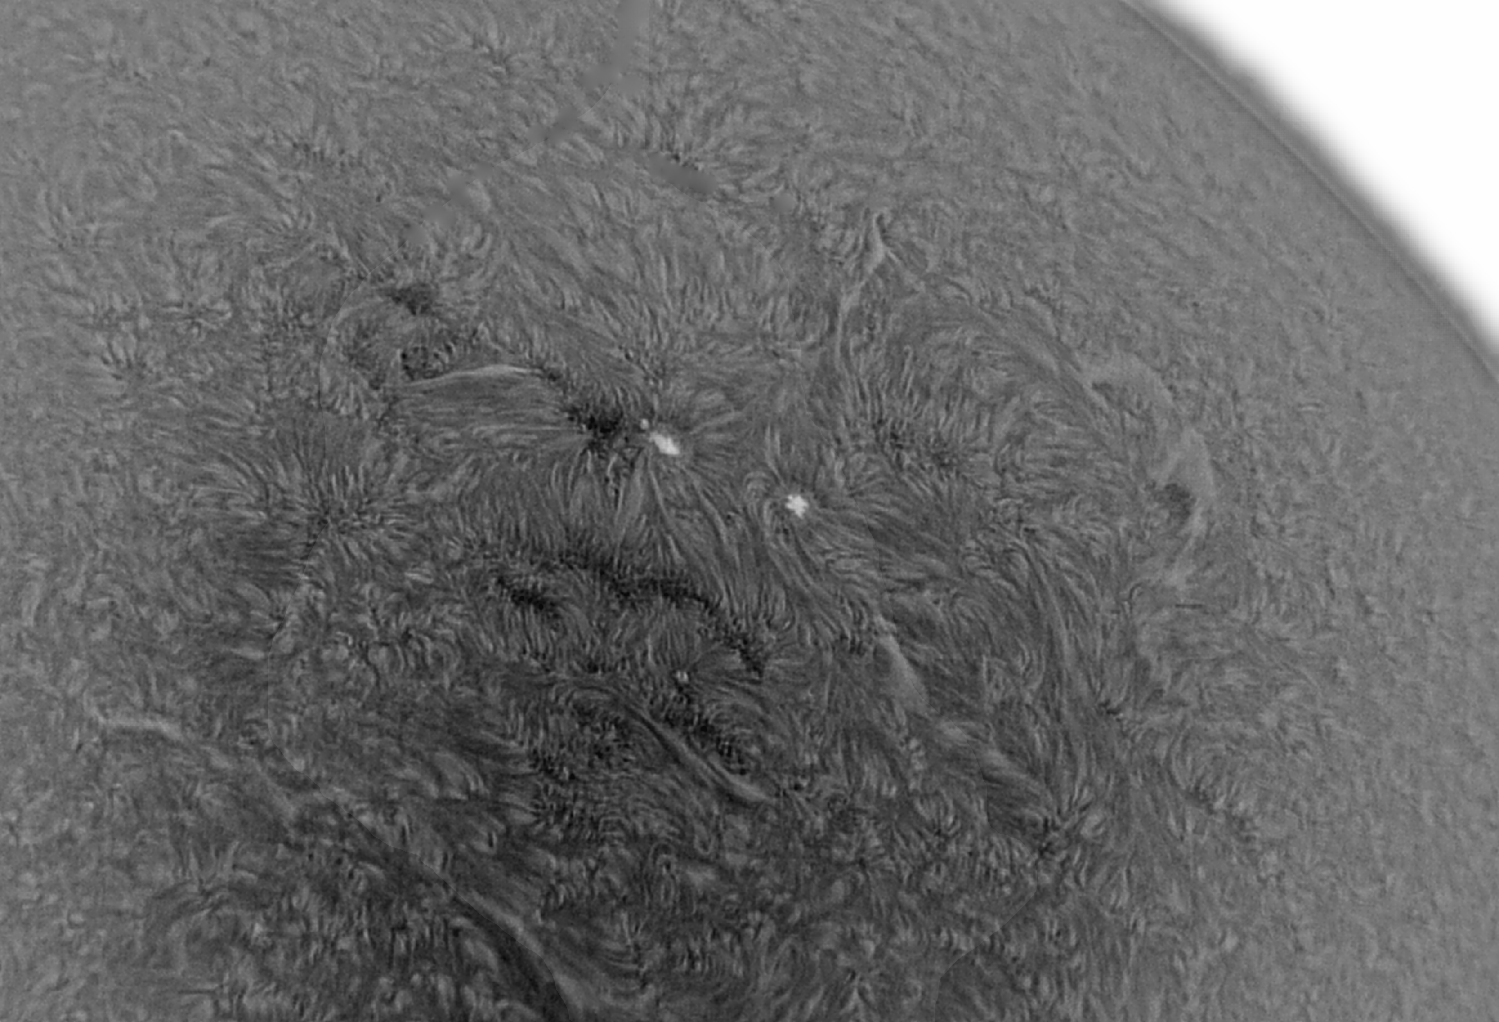 Fleckenregion der Sonne am 17. August 2016